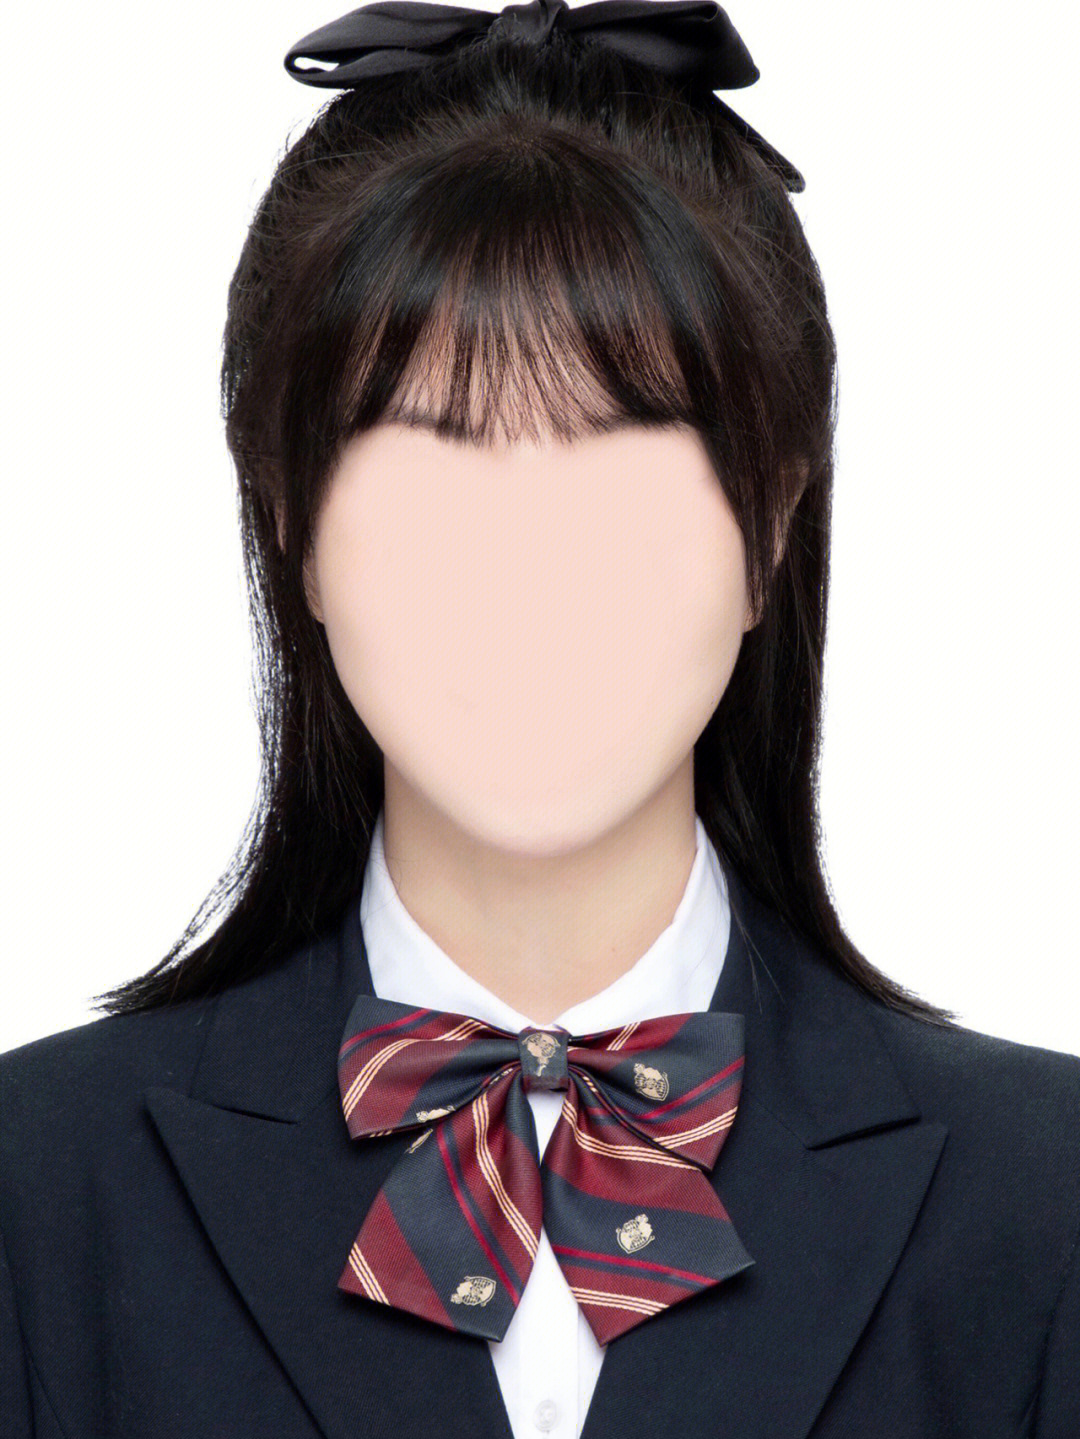 韩国制服证件照模板图片